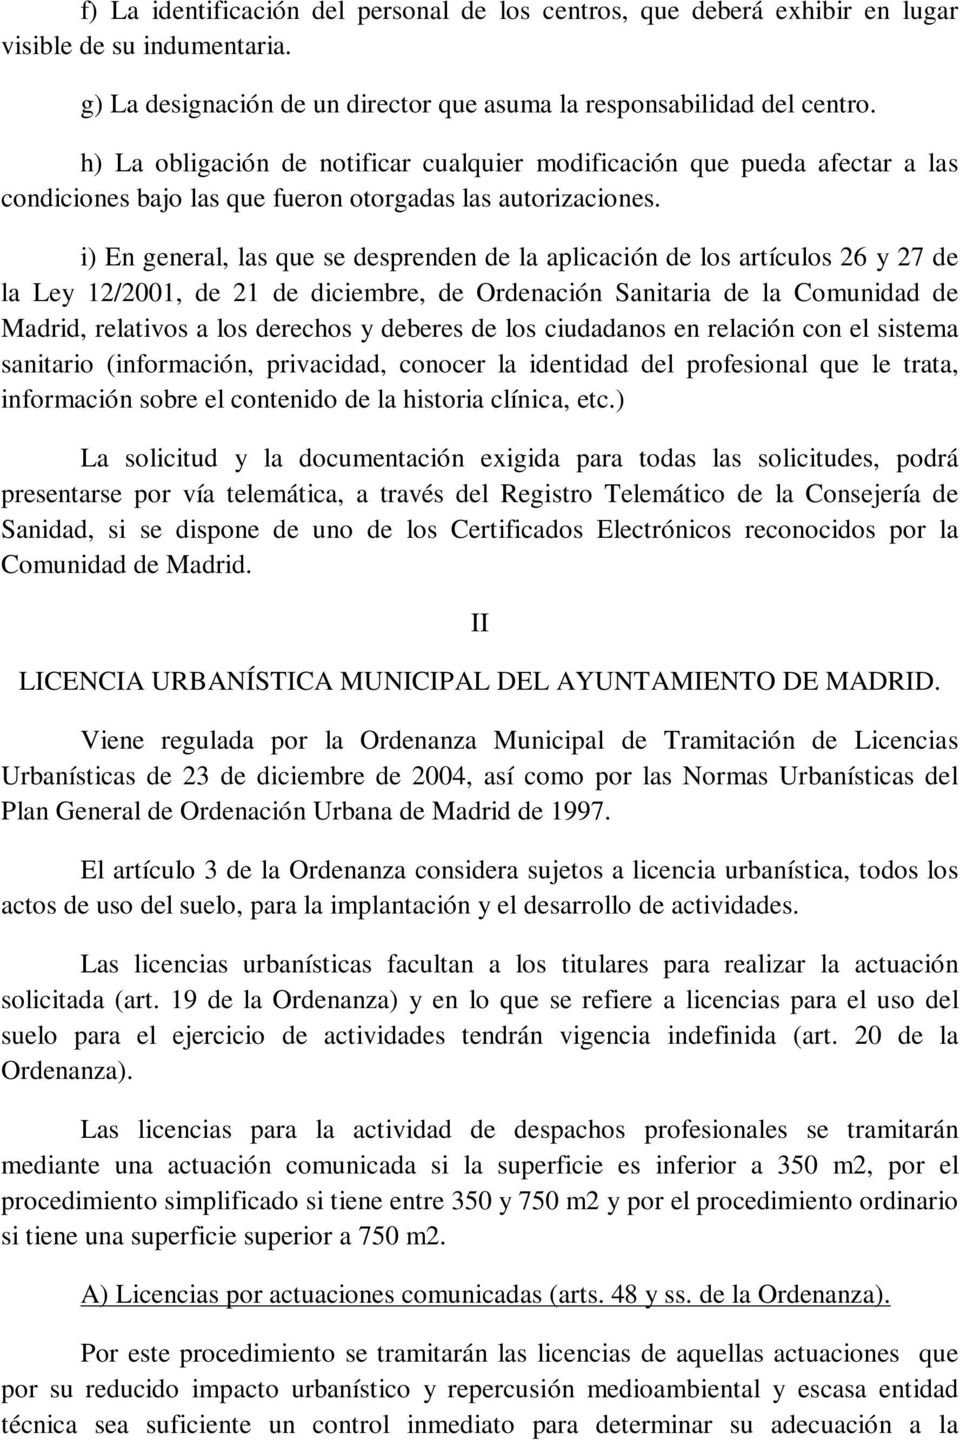 i) En general, las que se desprenden de la aplicación de los artículos 26 y 27 de la Ley 12/2001, de 21 de diciembre, de Ordenación Sanitaria de la Comunidad de Madrid, relativos a los derechos y